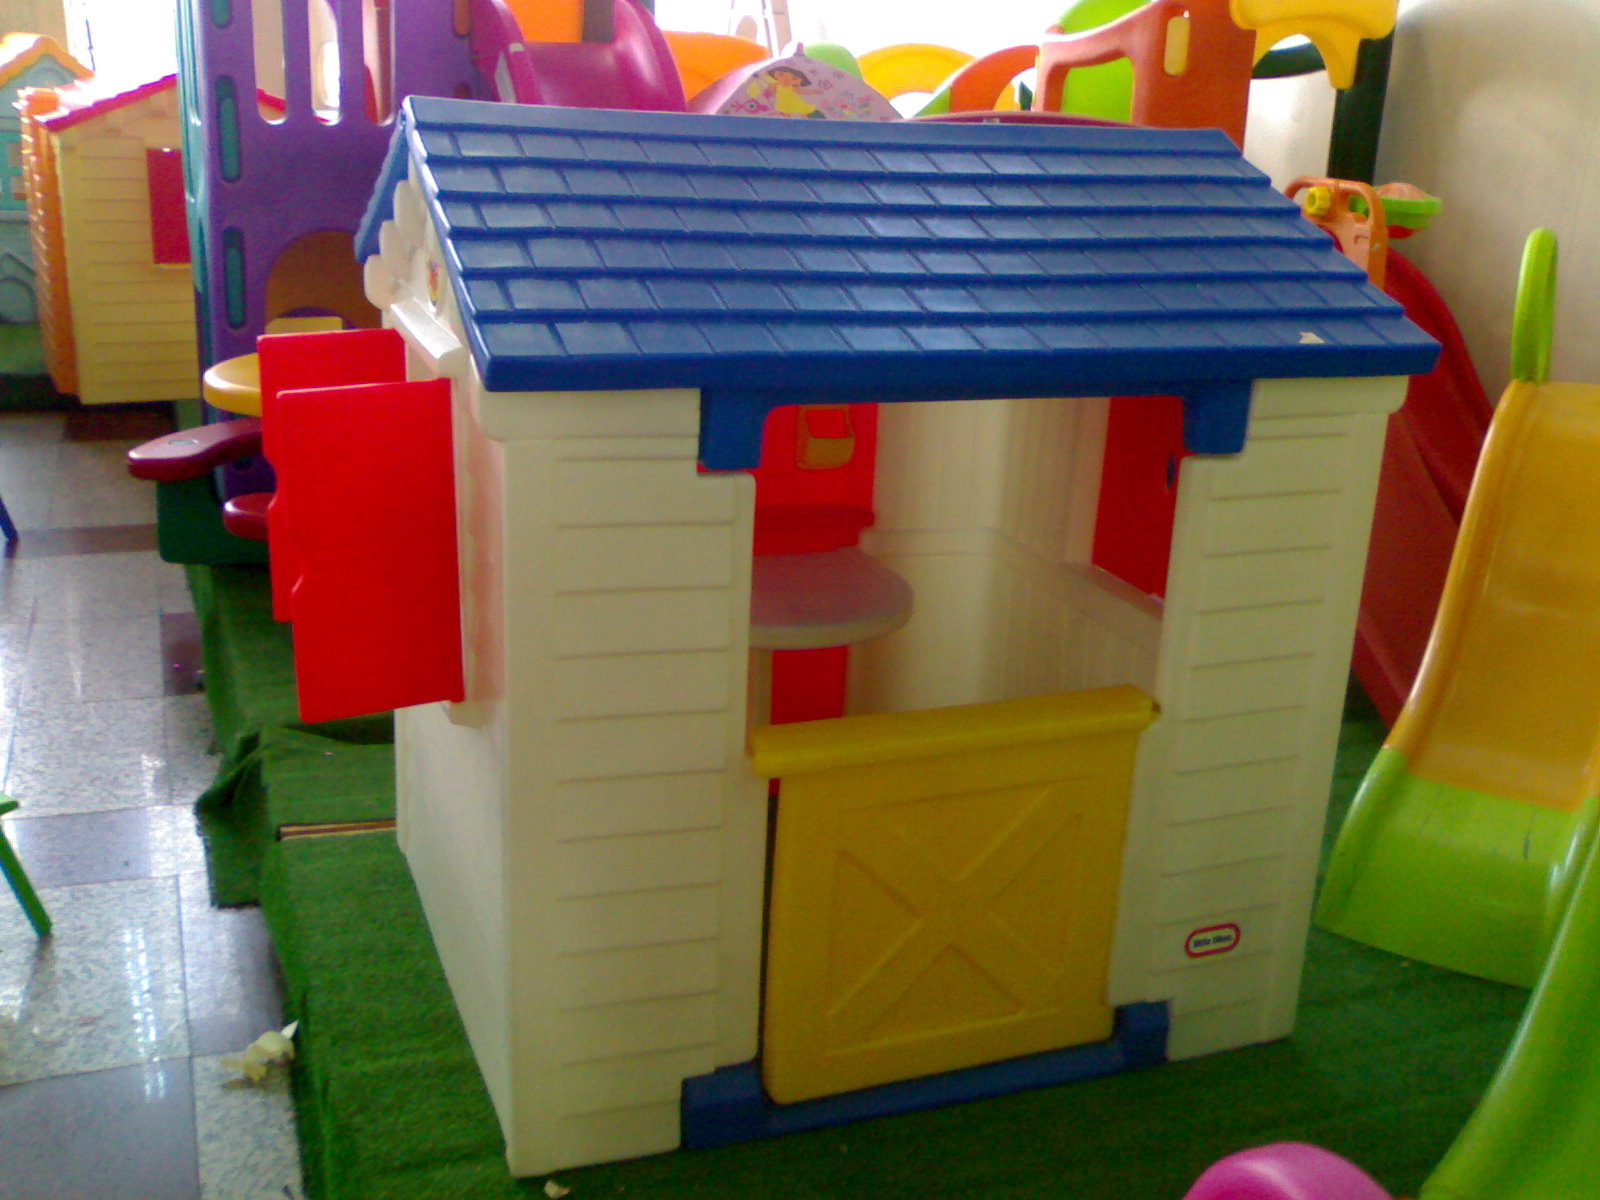  Rumah  Mainan  Distributor Ritel Dan Suplier Mainan  Anak